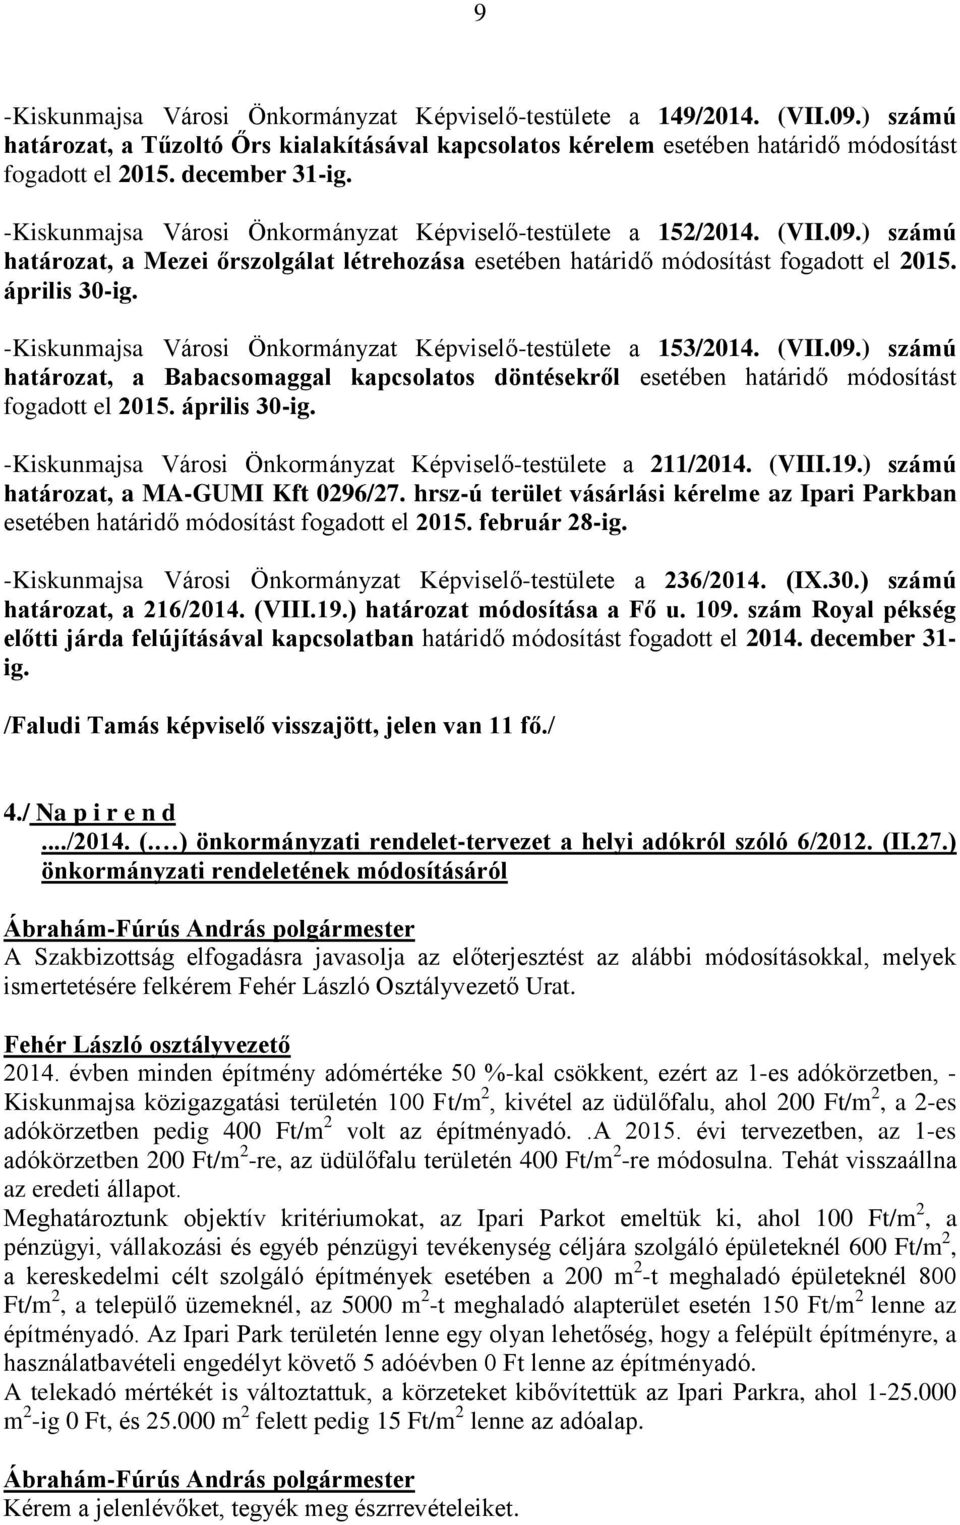 április 30-ig. -Kiskunmajsa Városi Önkormányzat Képviselő-testülete a 153/2014. (VII.09.) számú határozat, a Babacsomaggal kapcsolatos döntésekről esetében határidő módosítást fogadott el 2015.